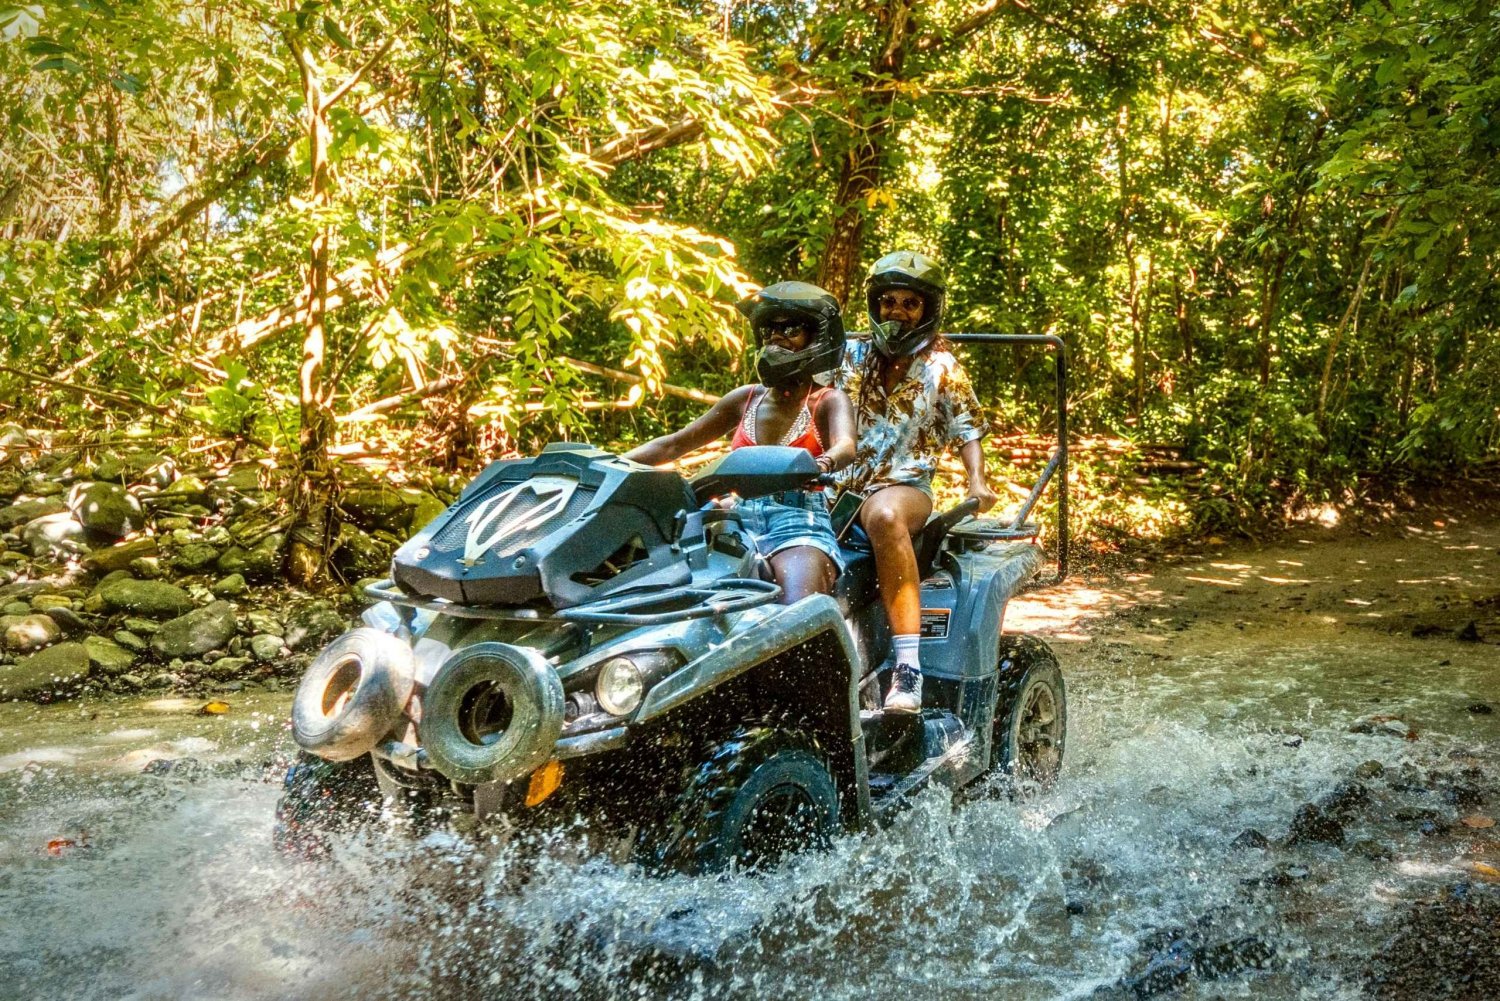 Parque de floresta tropical Carabalí: Tour guiado de aventura em quadriciclo